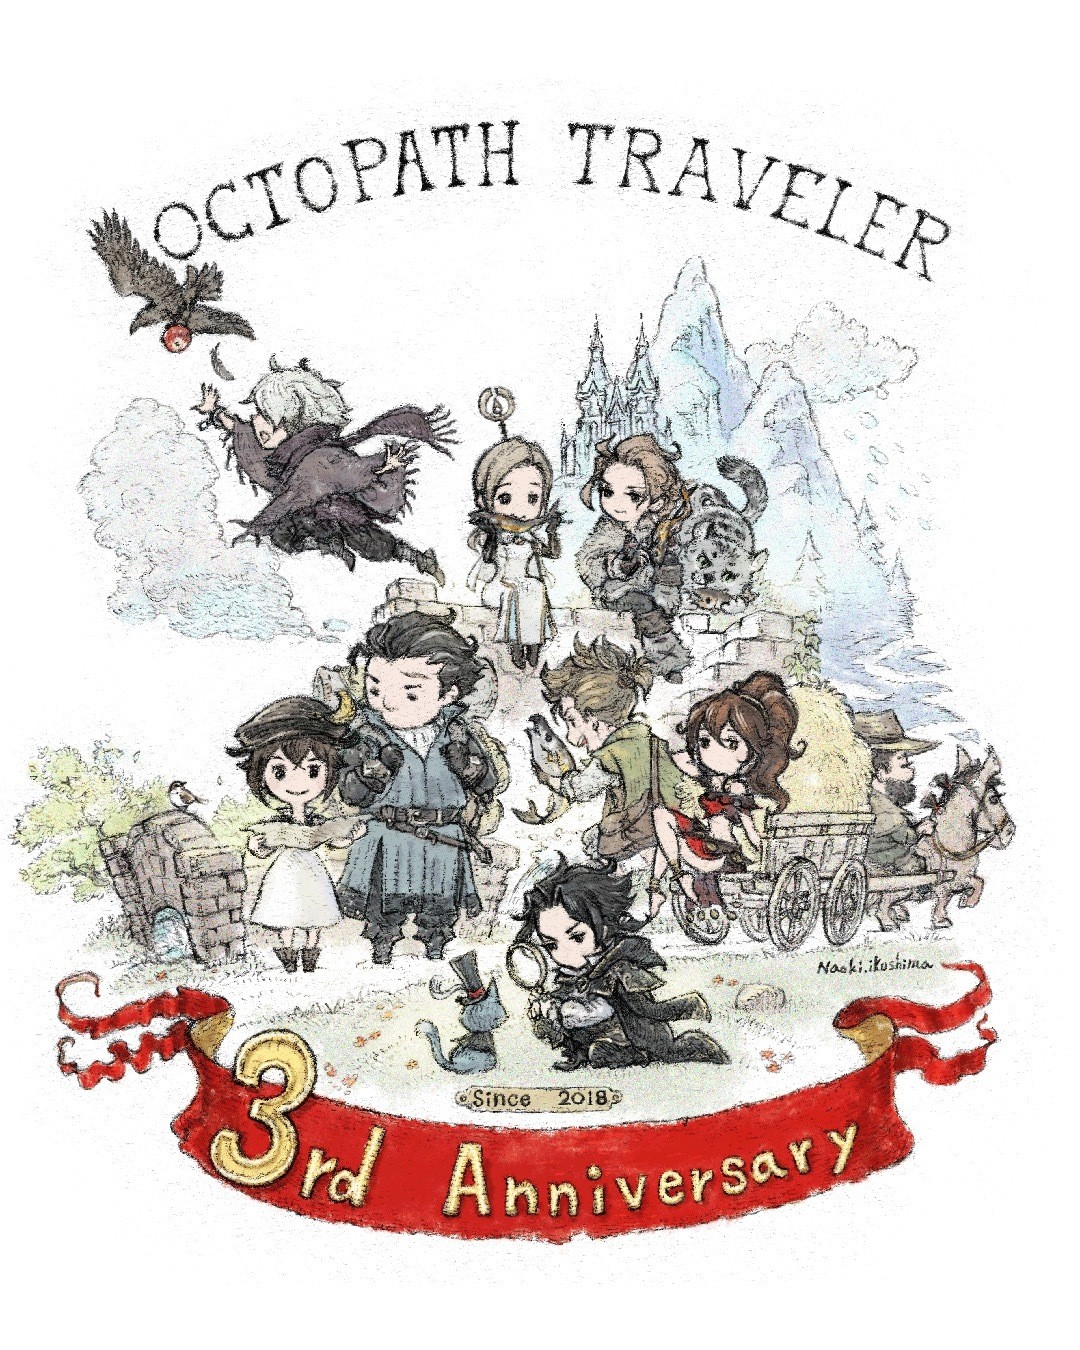 《歧路旅人 Octopath Traveler》上市屆滿三週年 官方釋出慶祝用賀圖